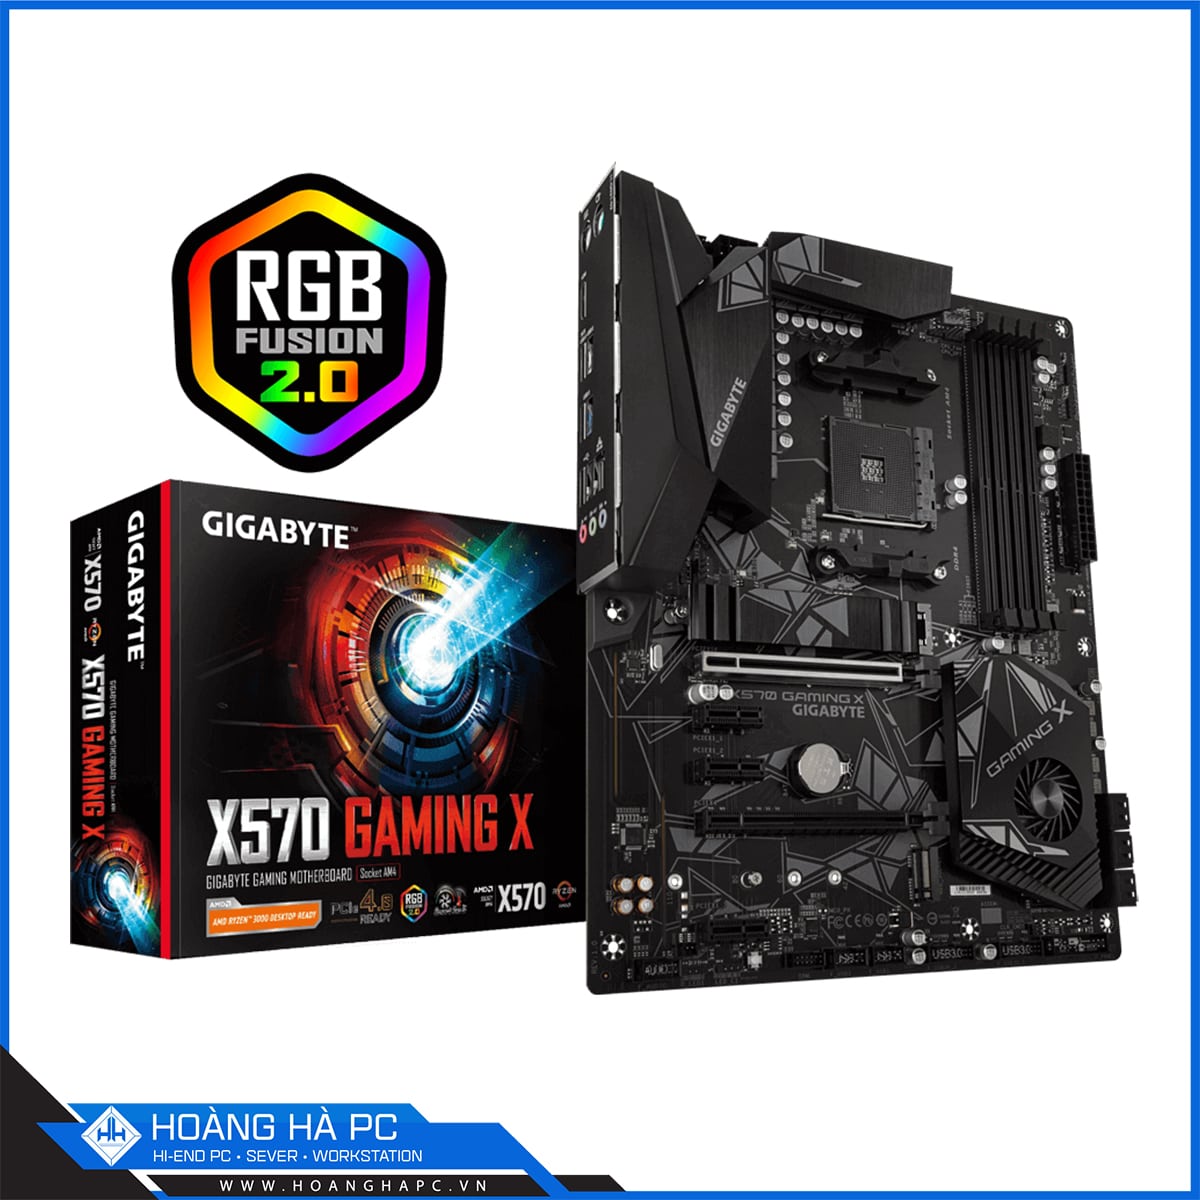 Mainboard GIGABYTE X570 GAMING X (AMD X570, Socket AM4, 4 Khe Cắm Ram DDR4)